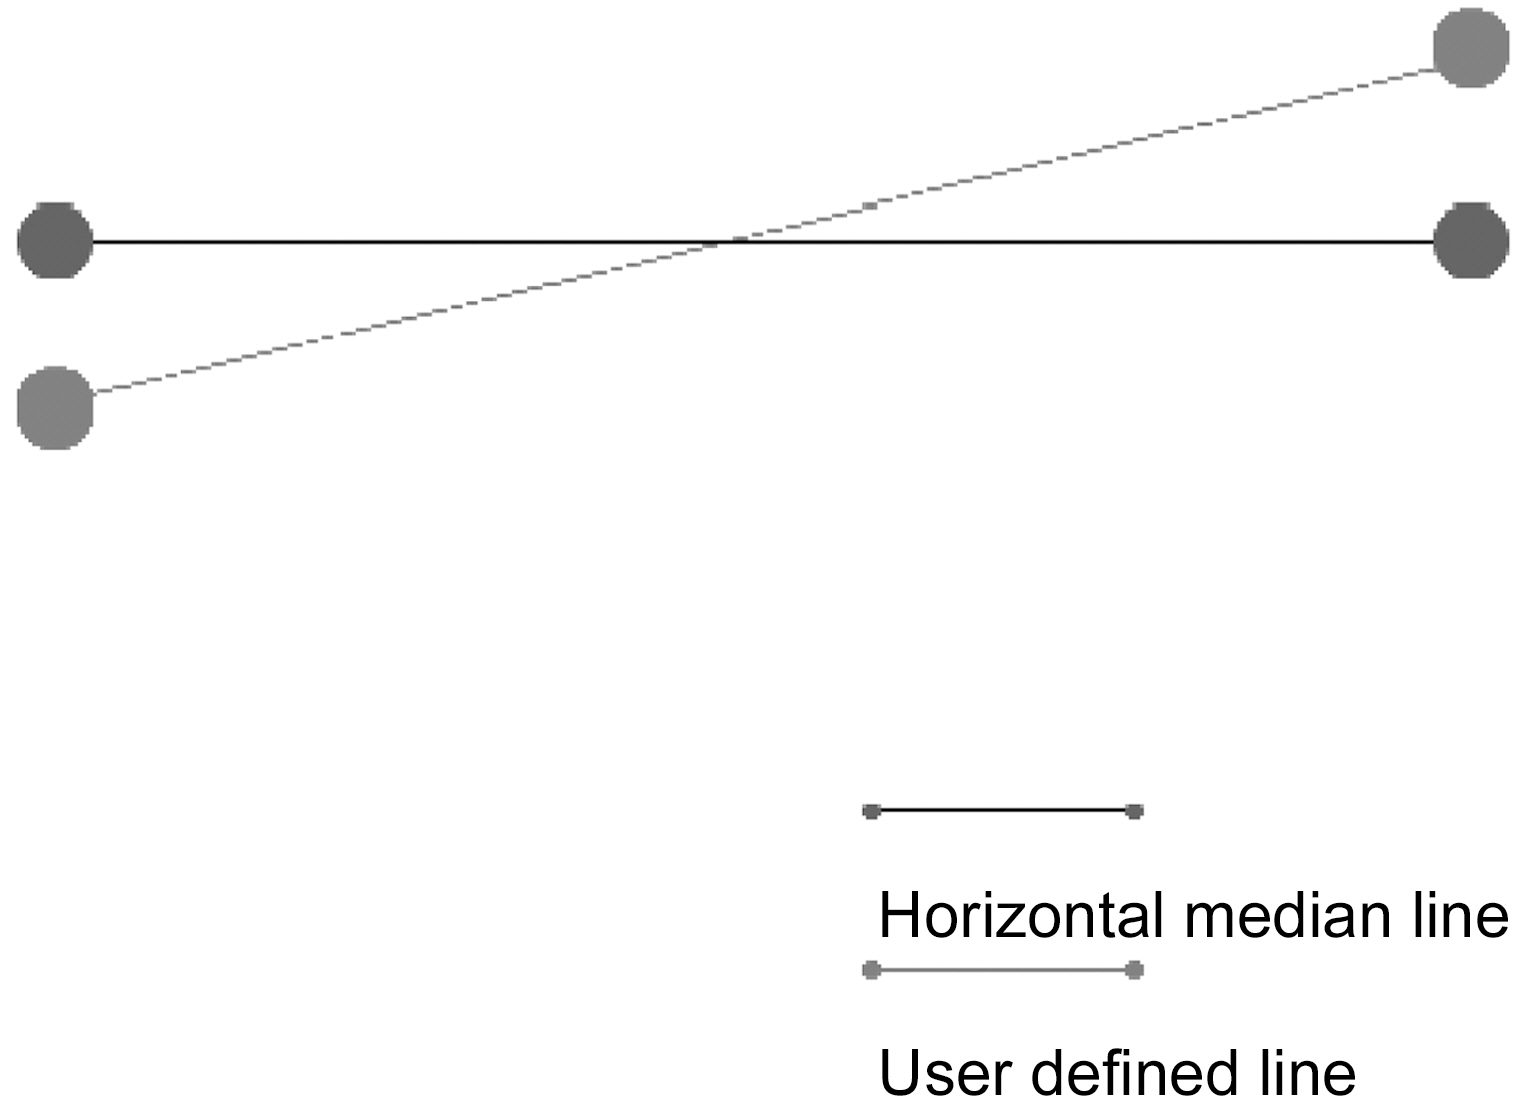 Horizontal median line and user define line.